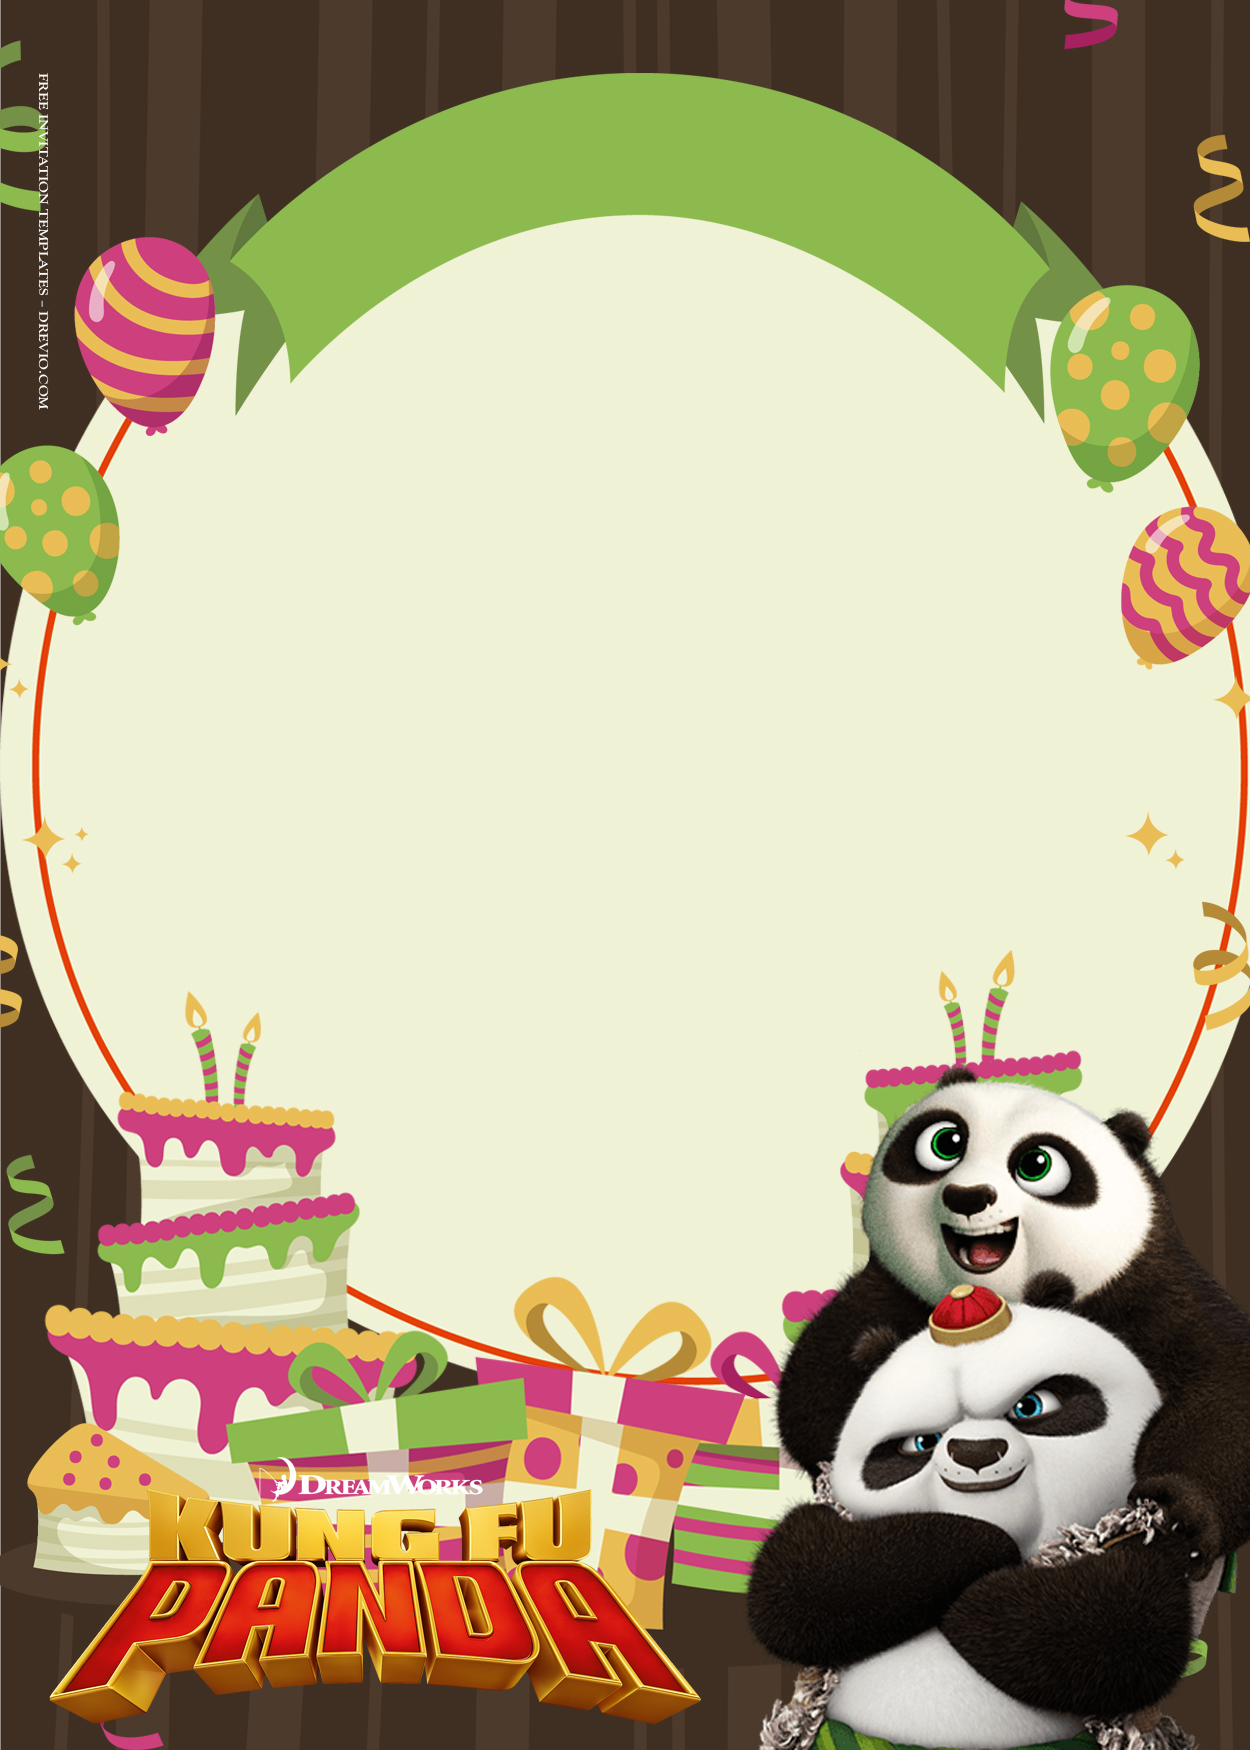 11+ Kungfu Panda The Breaking Dance Birthday Invitation Templates Three